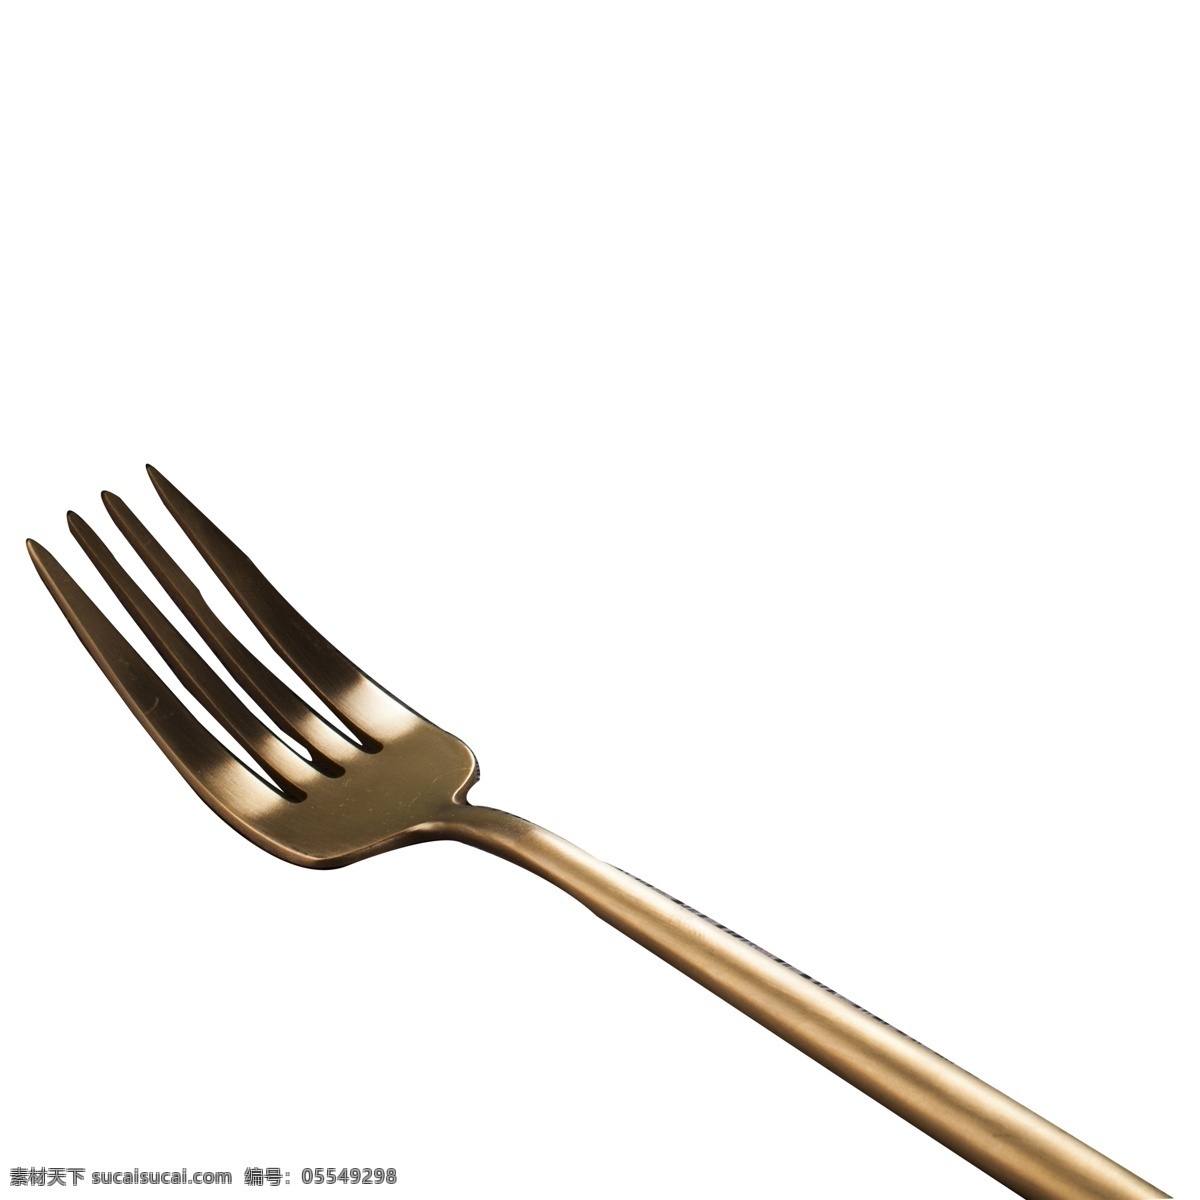 银 黄色 叉子 免 抠 图 刀叉 生活刀叉 厨房用品 西餐用品 生活用品 厨房工具 银黄色的叉子 免抠图